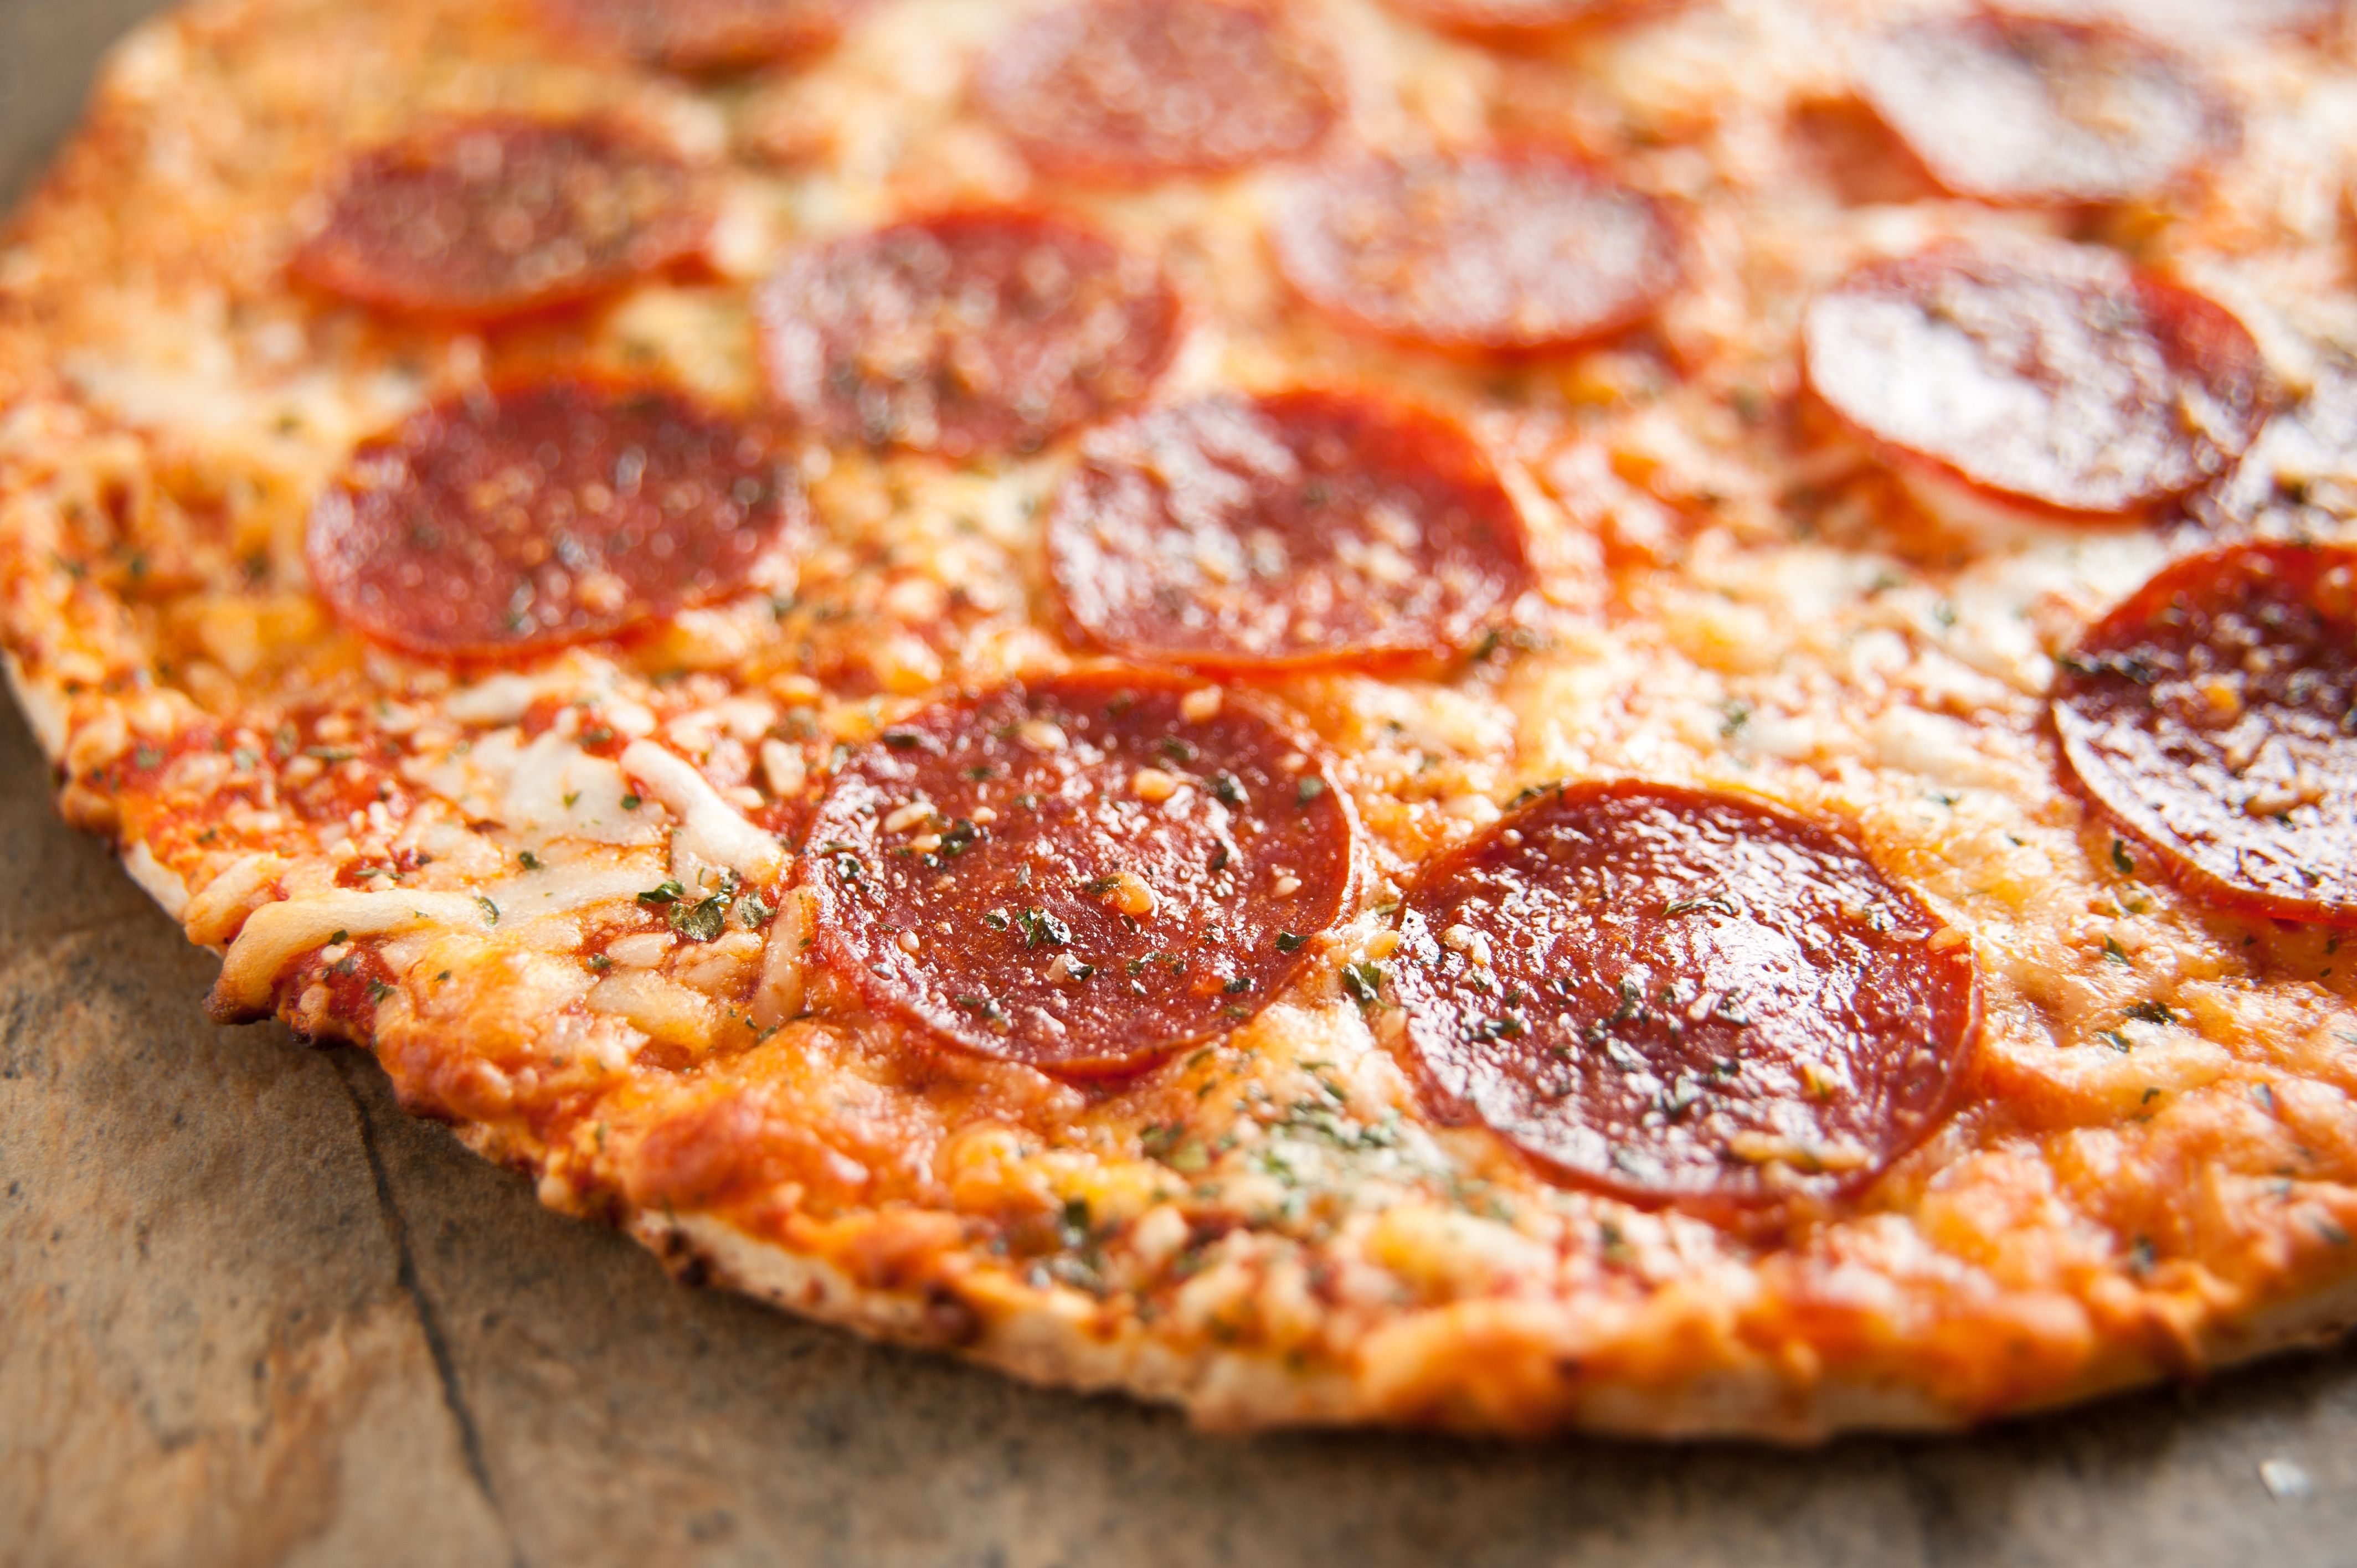 сколько калорий в куске пиццы пепперони додо фото 46